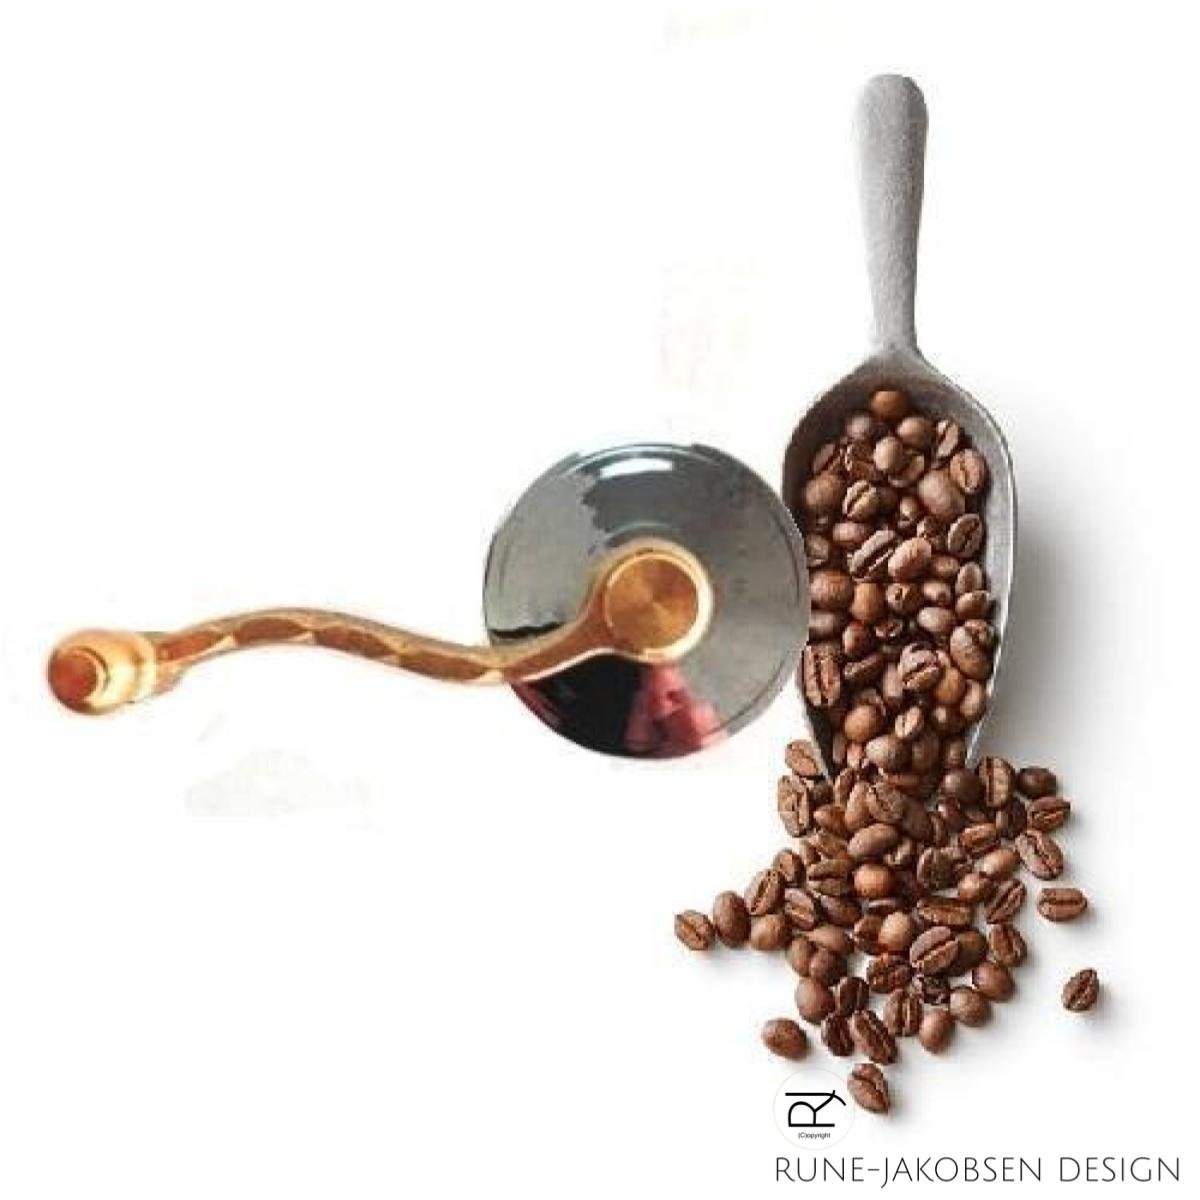 'Minimal' kaffekværn Kaffekværne fra Rune-Jakobsen Design